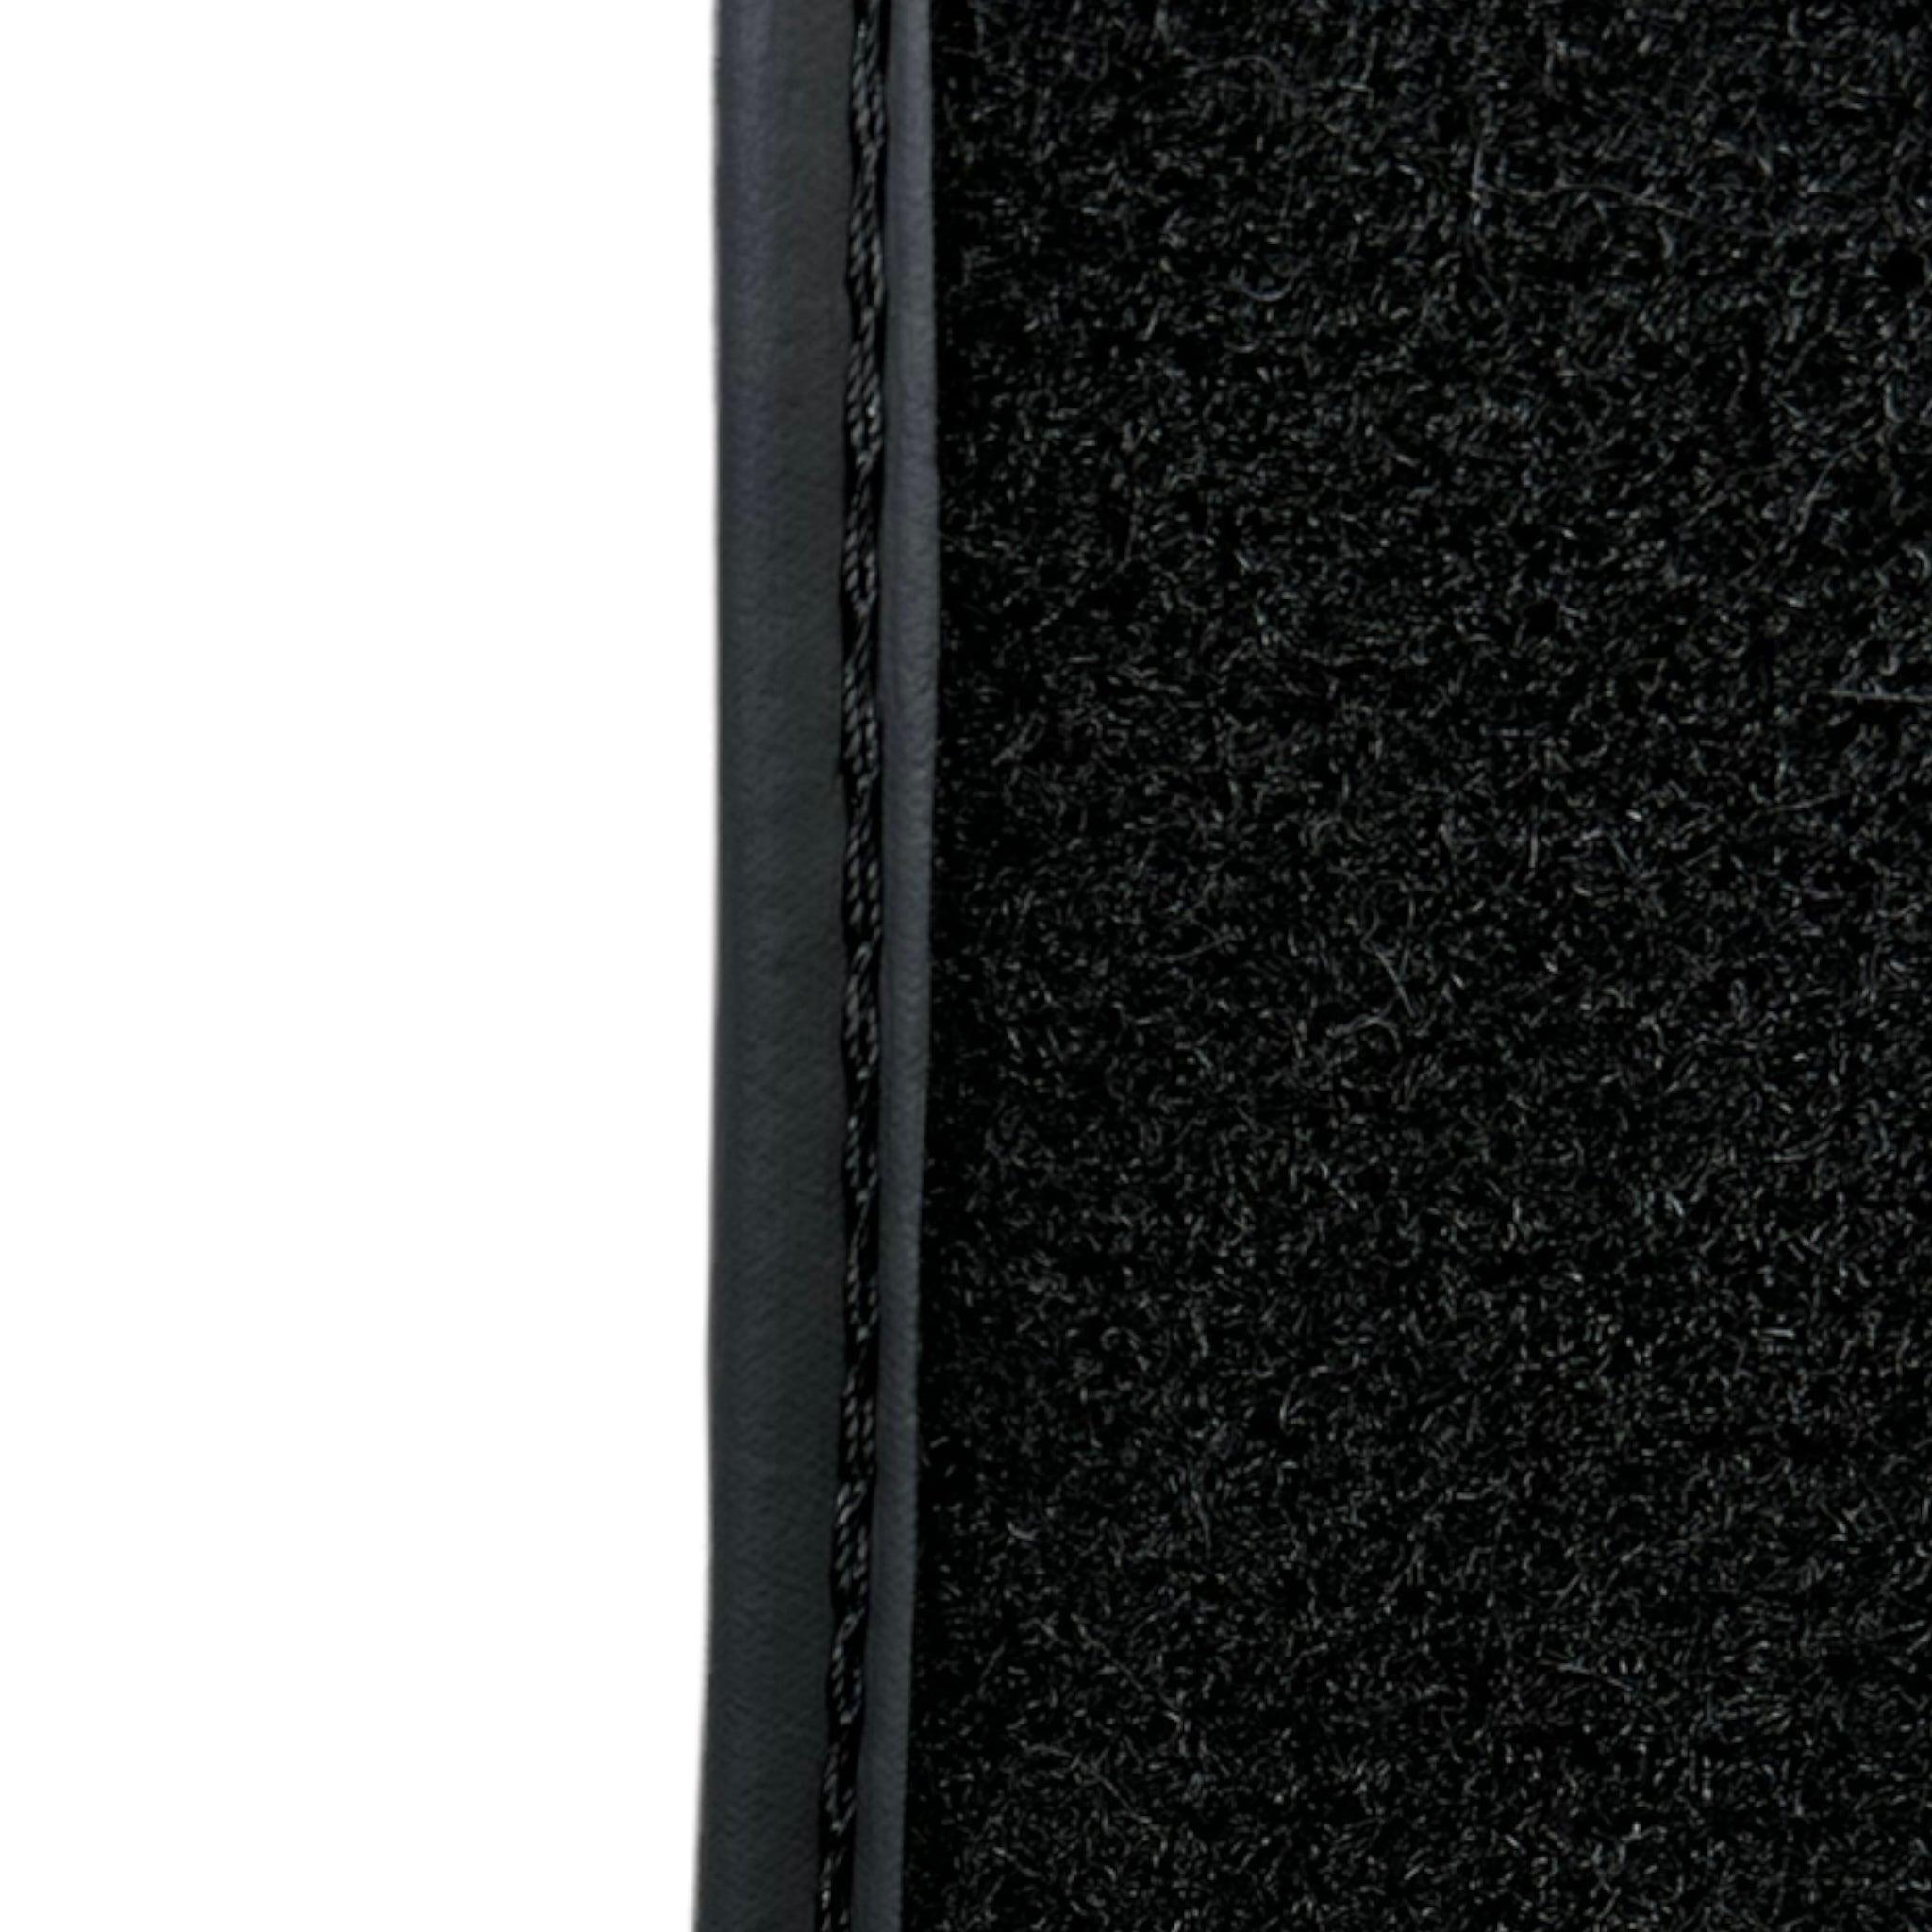 Black Sheepskin Floor Floor Mats For BMW 3 Series E92 ER56 Design